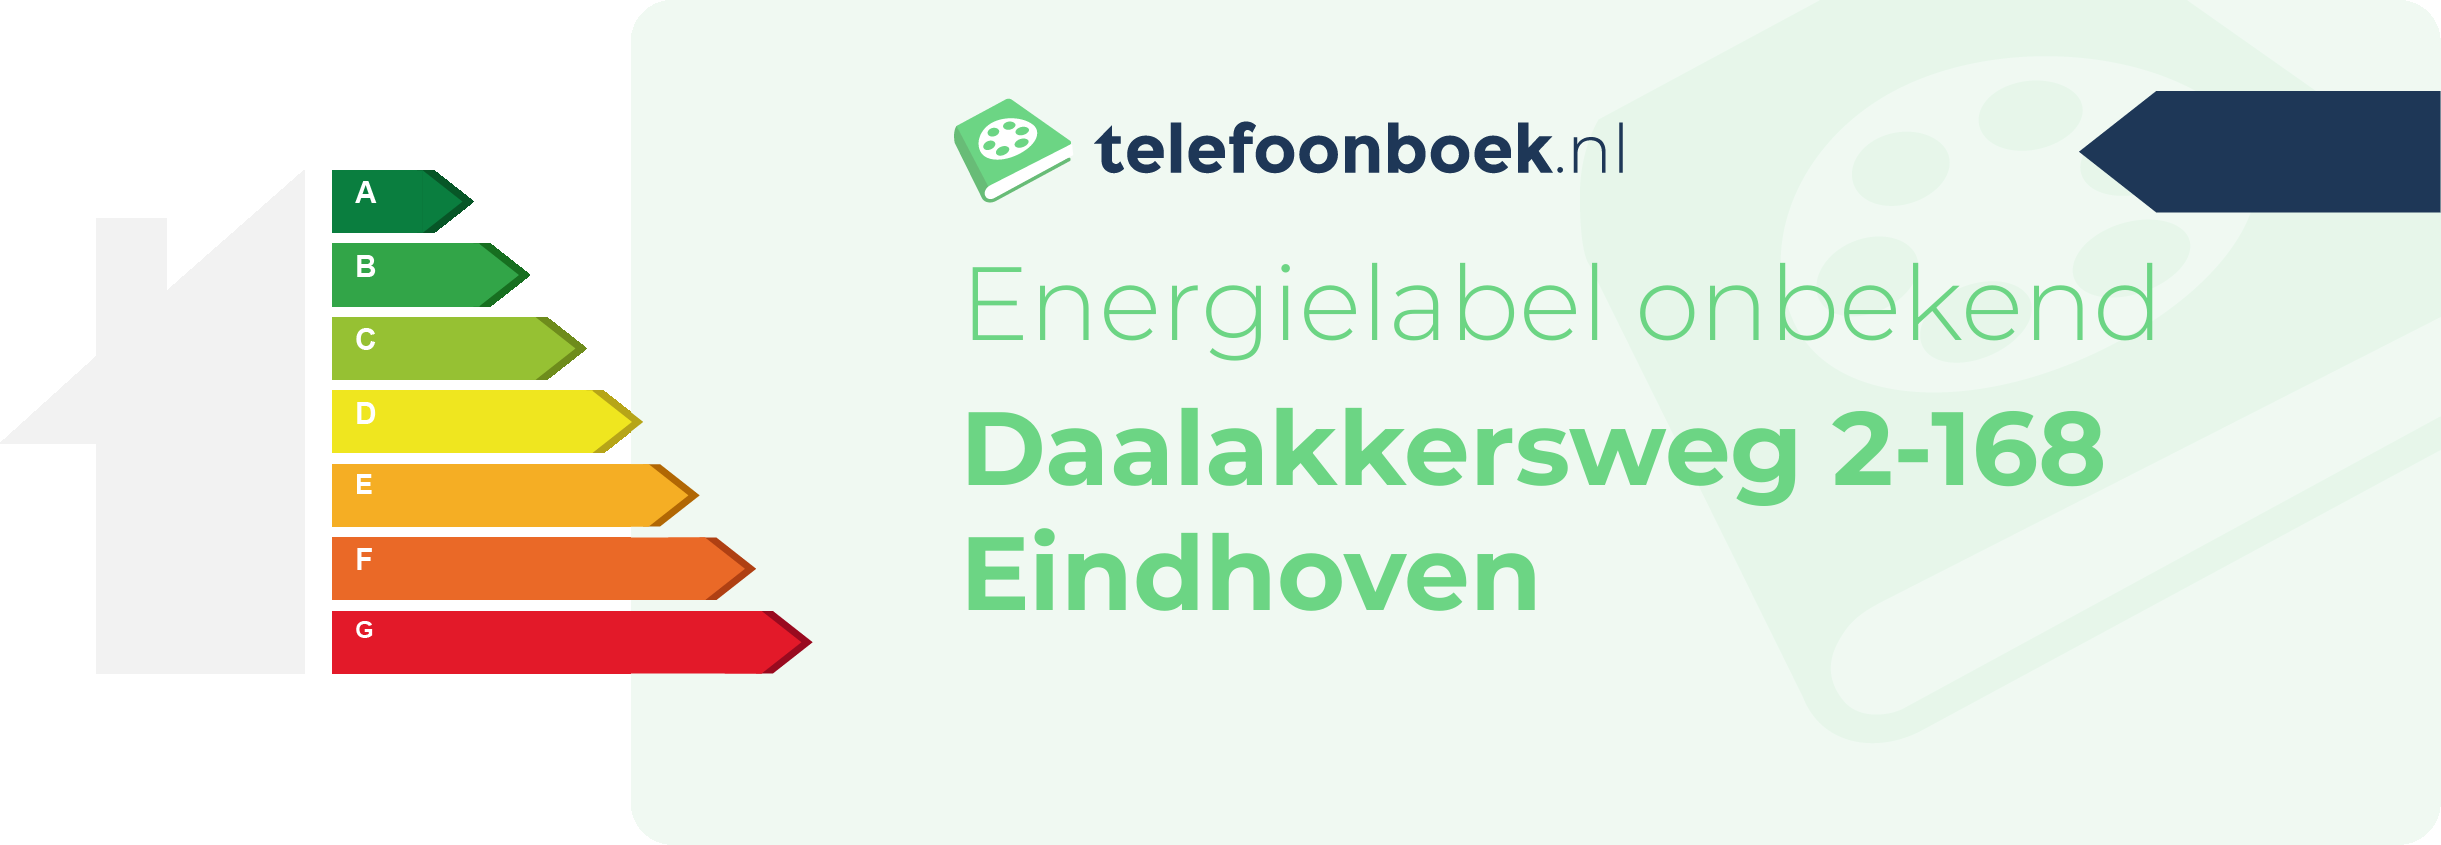 Energielabel Daalakkersweg 2-168 Eindhoven